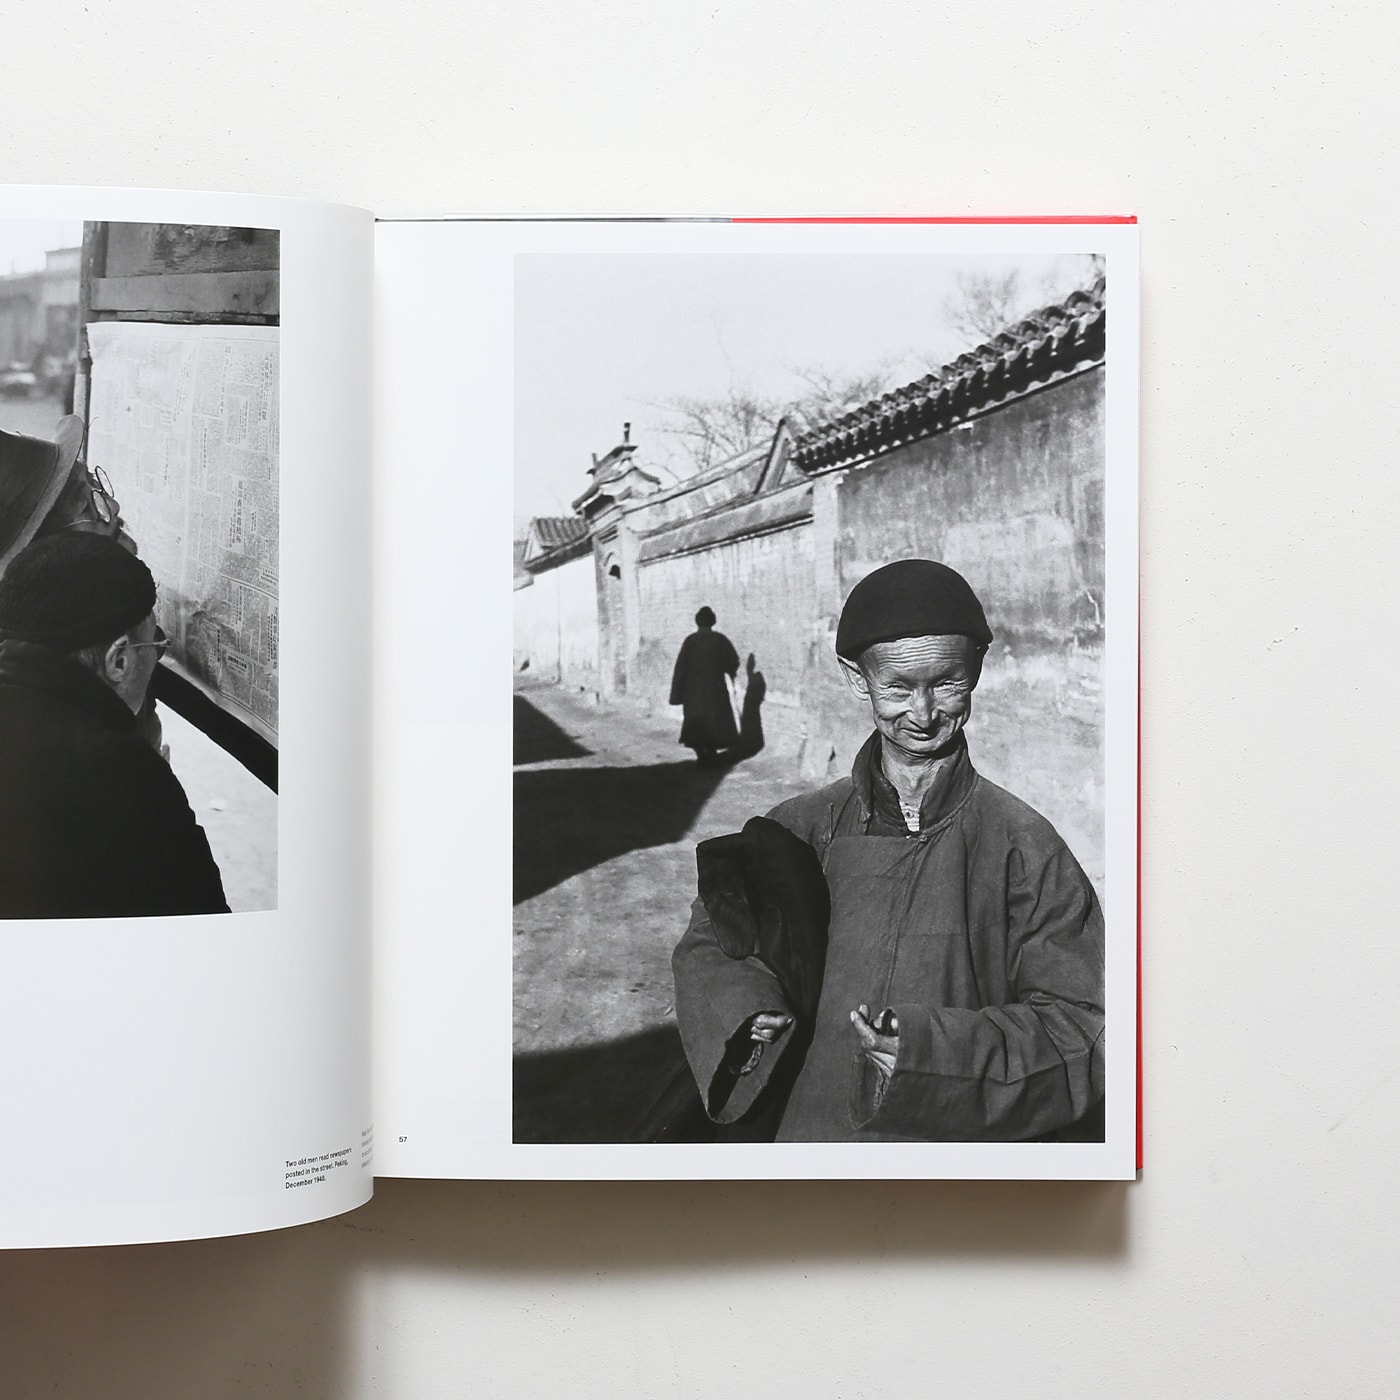 Henri Cartier-Bresson: China 1948-1949, 1958